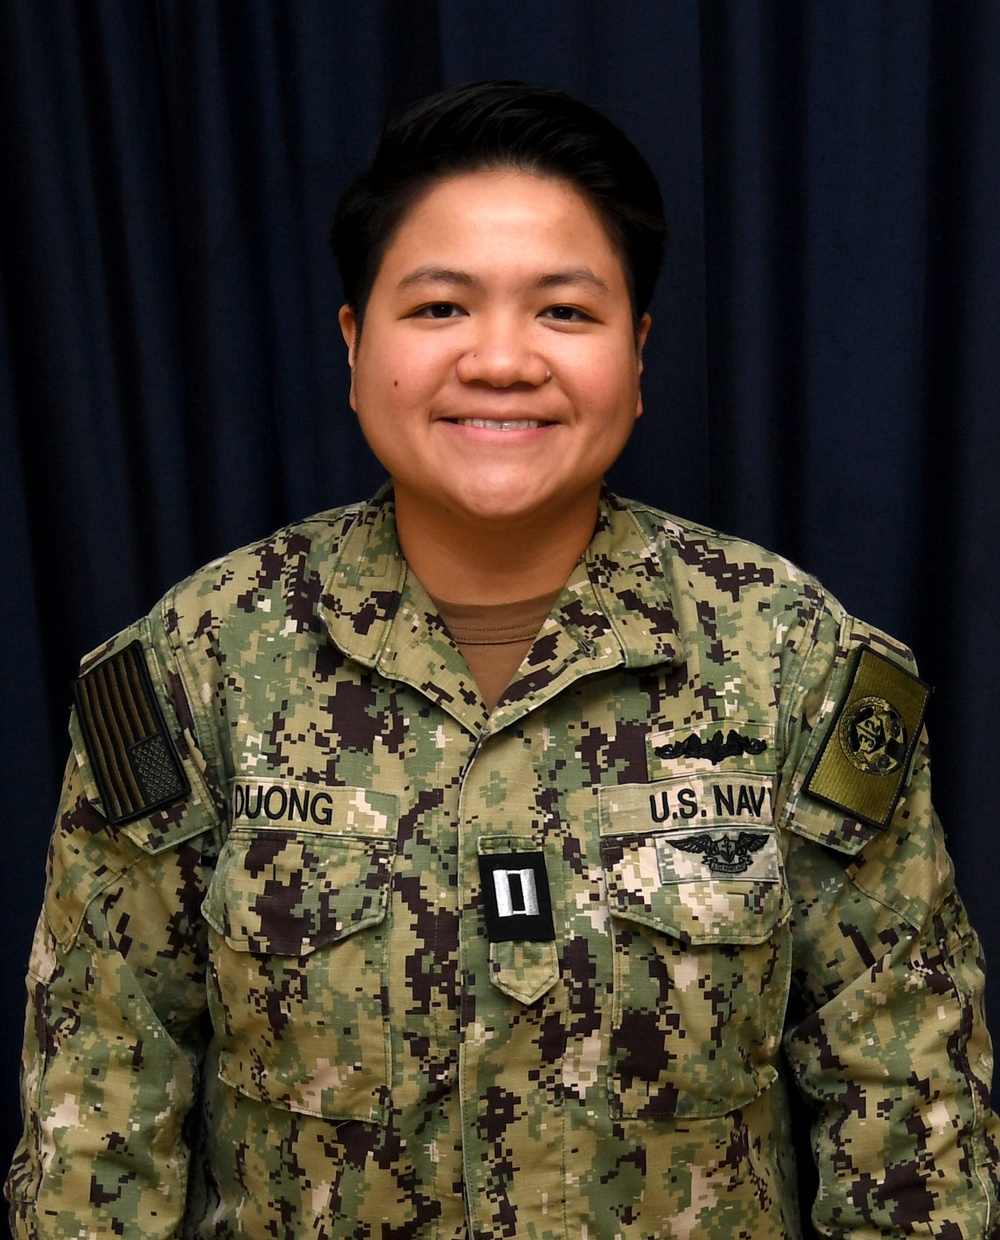 Lieutenant Phung Duong VADM Batchelder Award Recipient